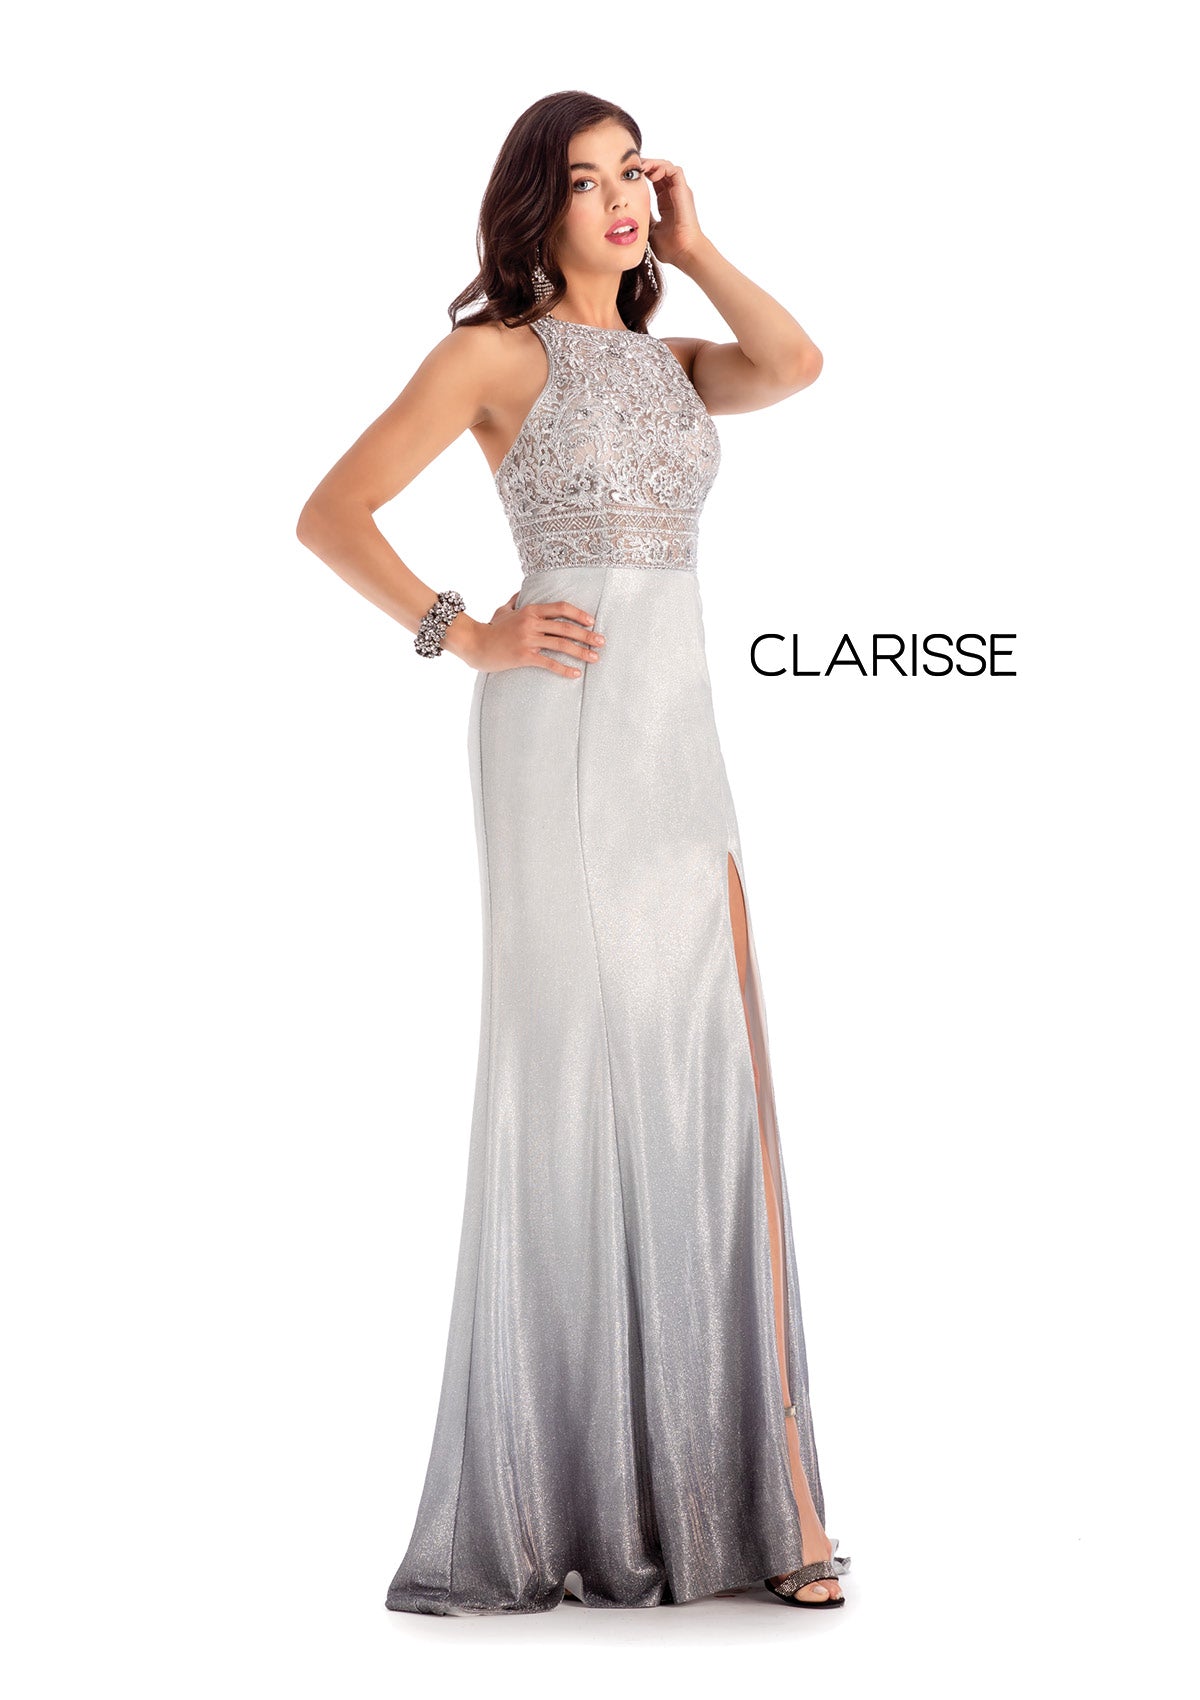 Style #8100 Clarisse